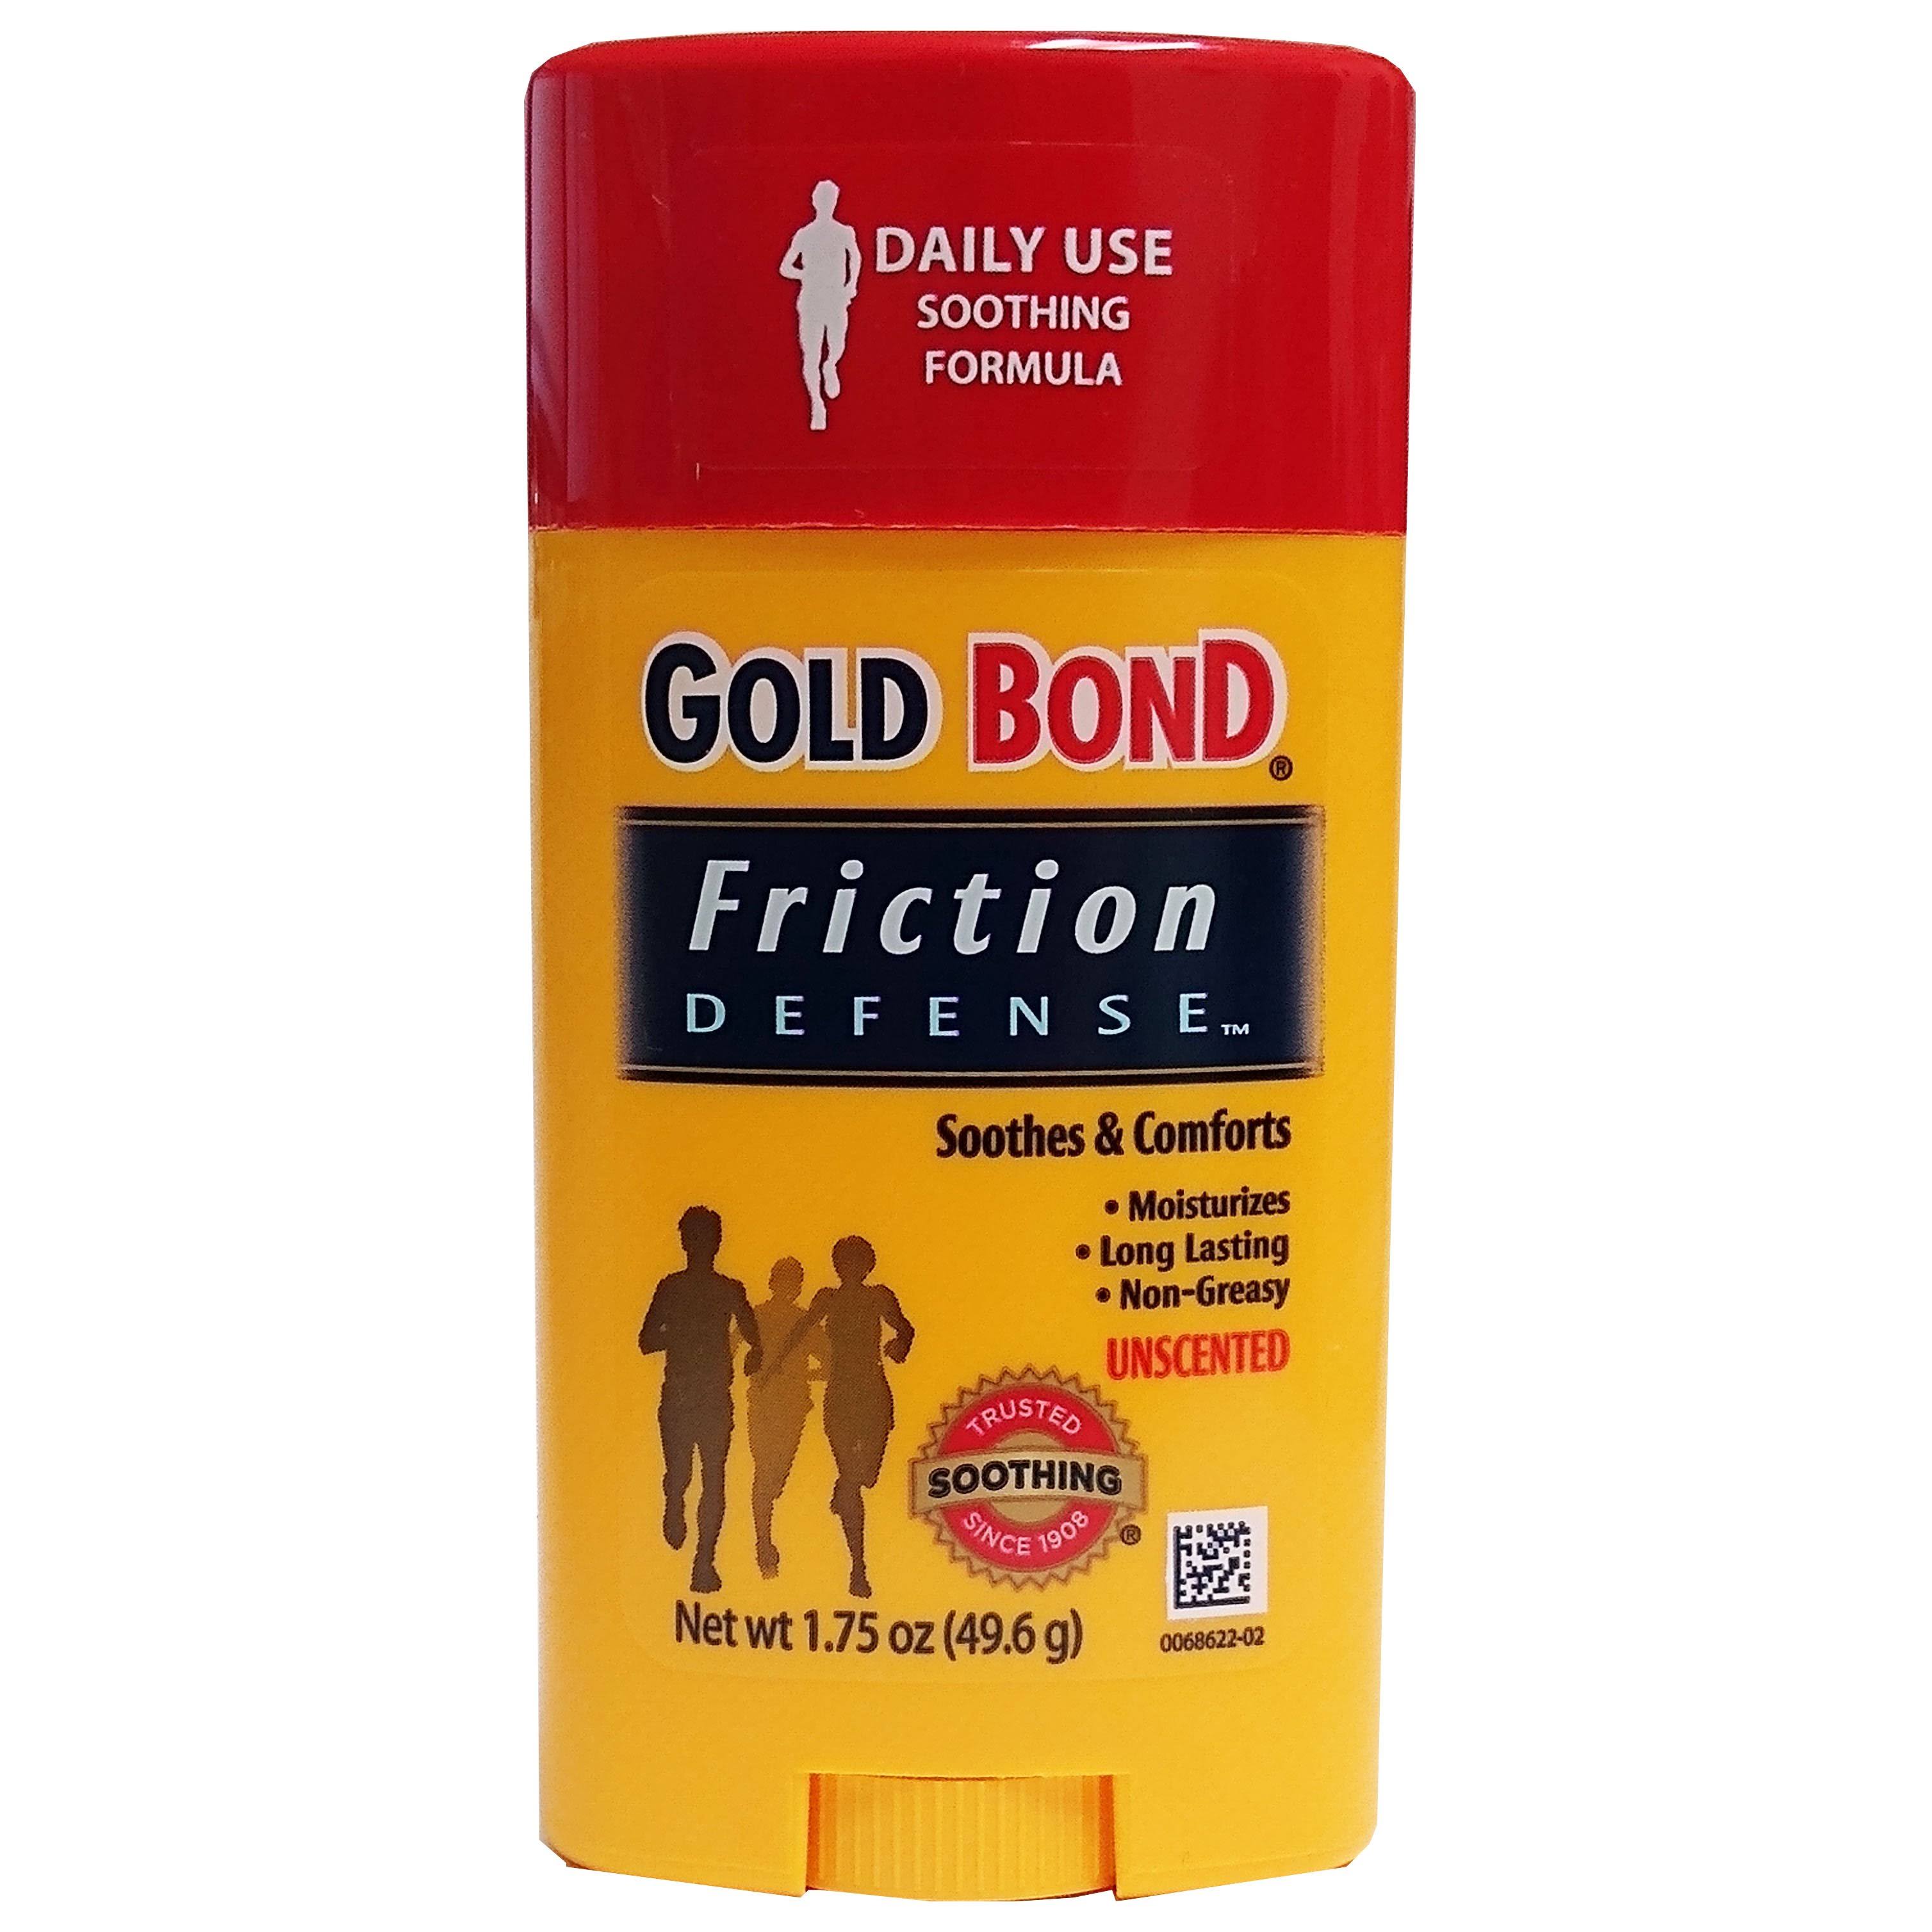 Gold Bond Friction Defense Soothing Formula - Unscented, 1.75oz